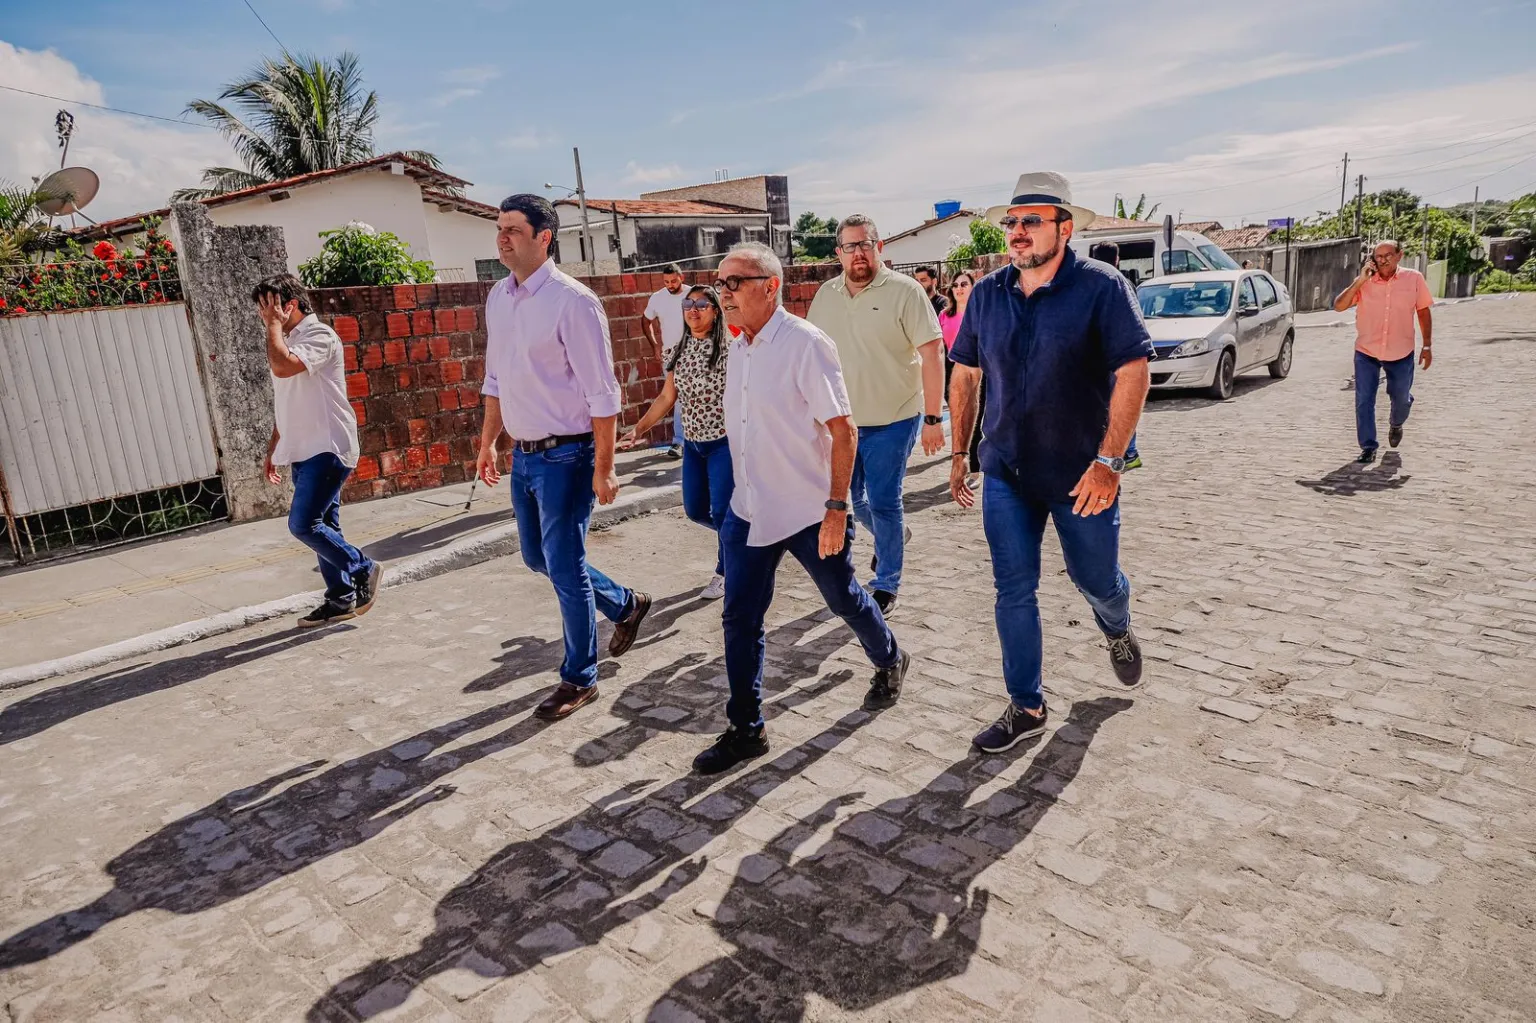 Cícero supera Luciano Cartaxo e Ricardo Coutinho juntos em quantidade de ruas calçadas